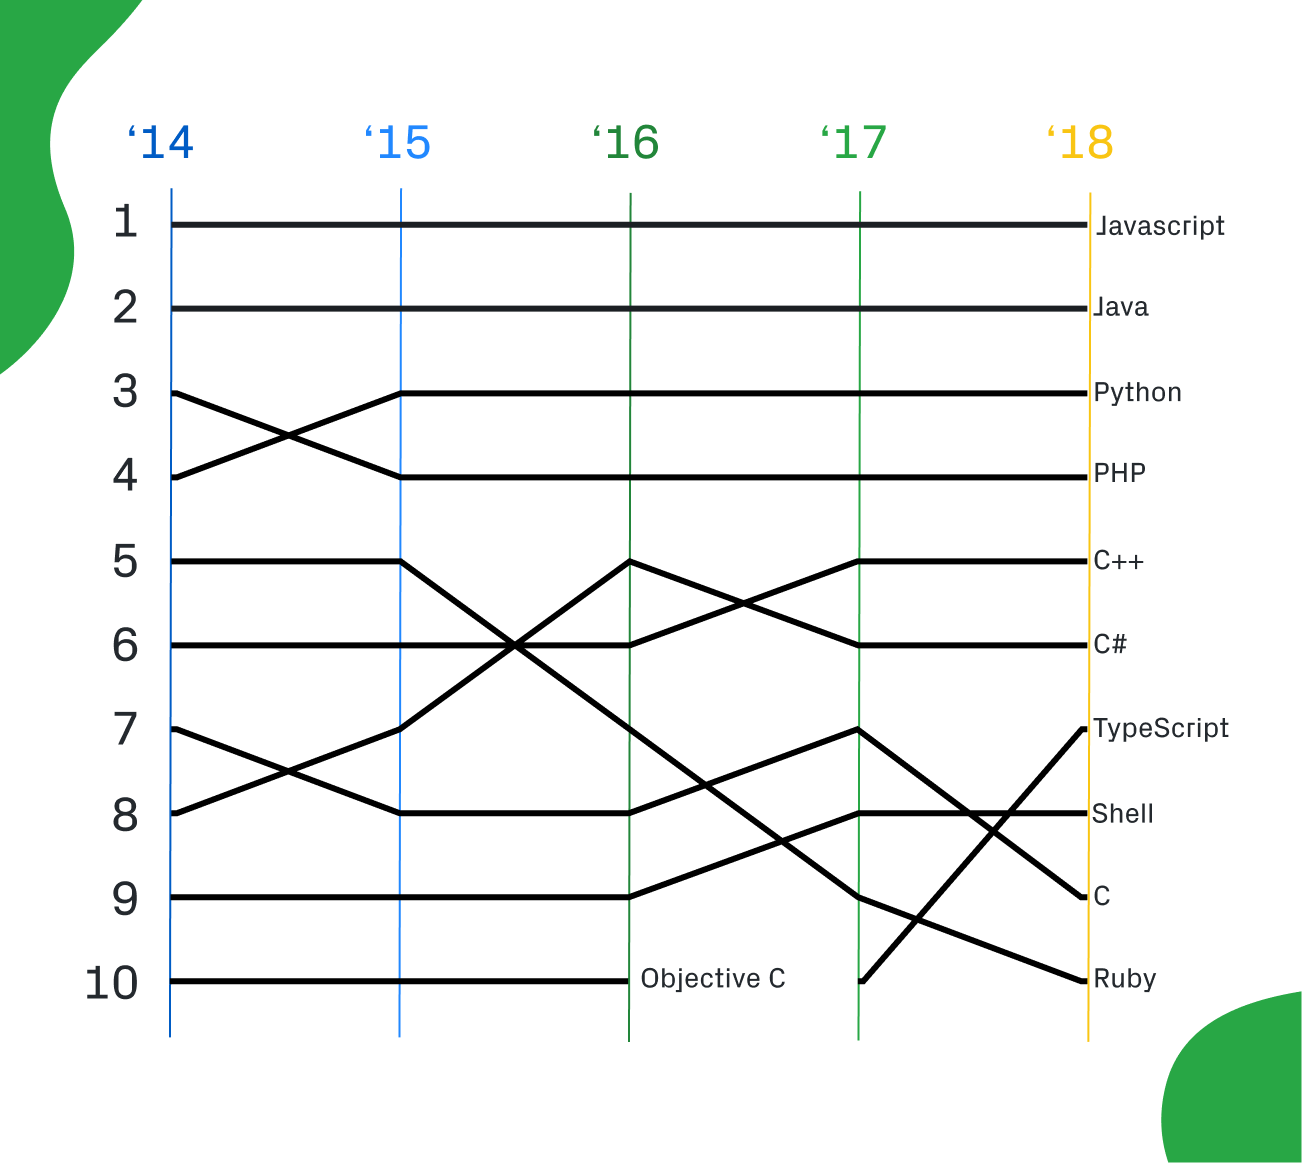 GitHub опубликовала собственный рейтинг языков программирования за 2018 год 2